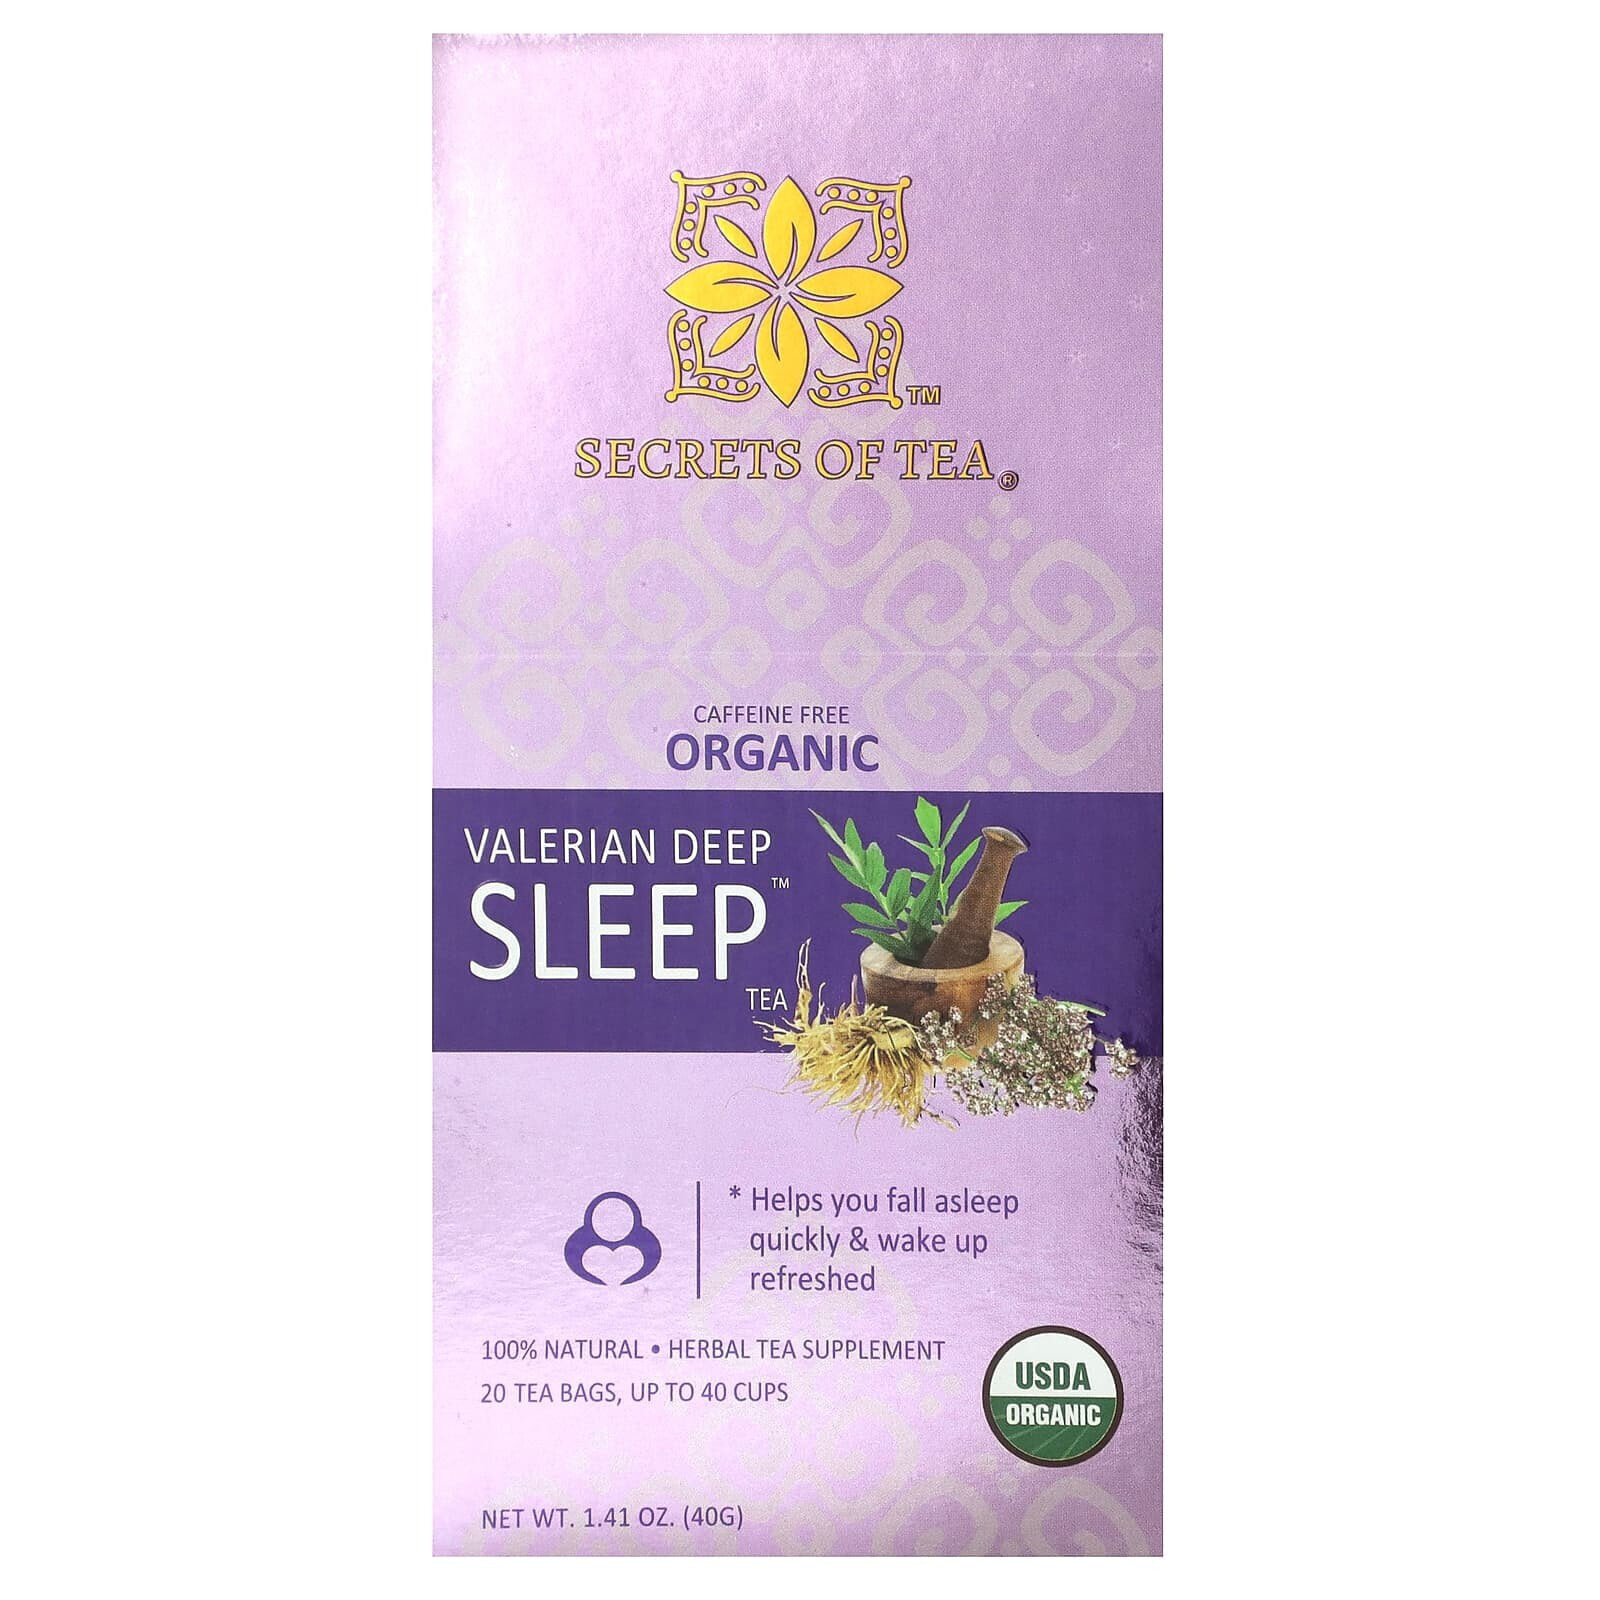 Secrets of Tea, Organic Valerian Deep Sleep Tea, Caffeine Free, 20 Tea Bags, 1.41 oz (40 g)